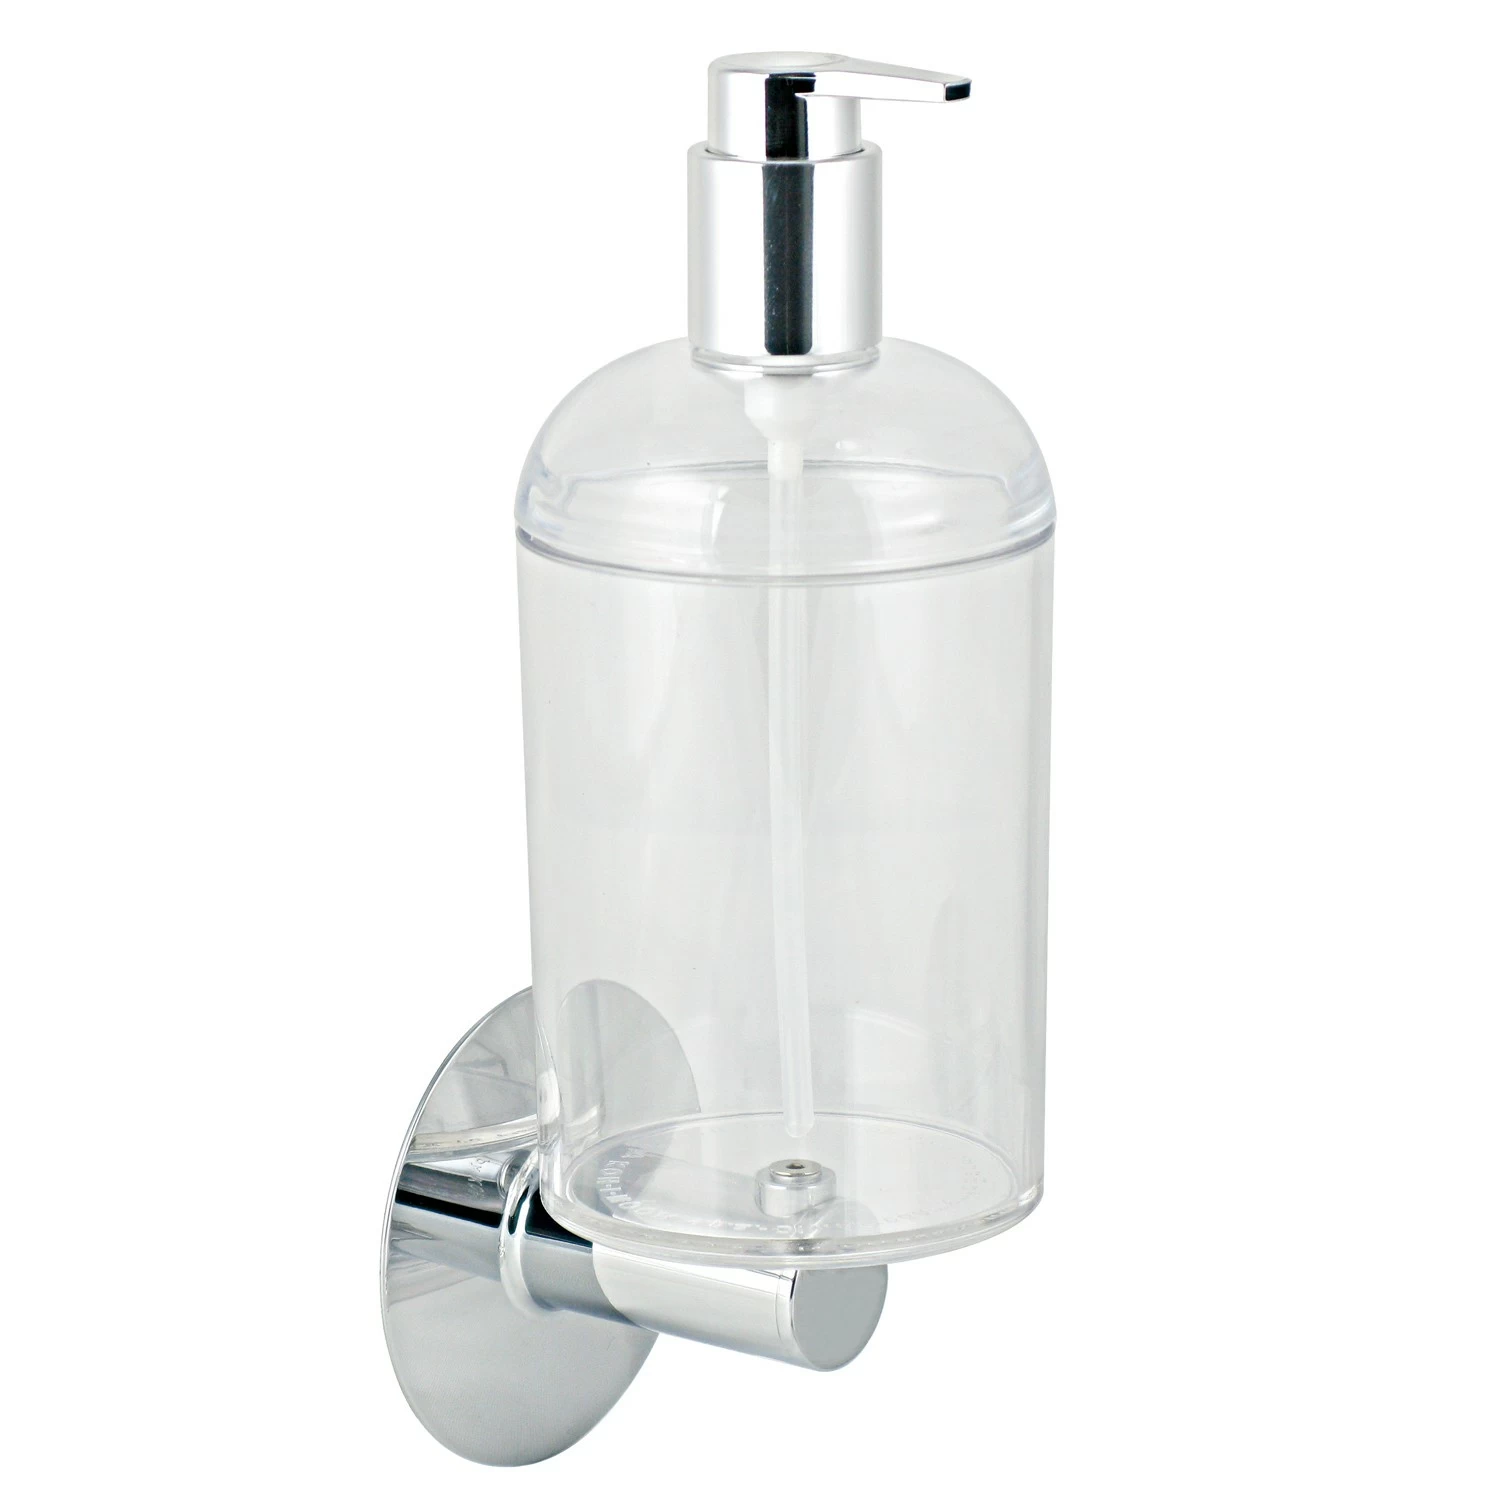 Купить дозатор настенный. Дозатор для мыла Koh-i-Noor 6114kk (хром) настенный самоклеющийся. Прозрачные дозаторы в ванной. Диспенсер для мыла настенный. Диспенсер Италия.